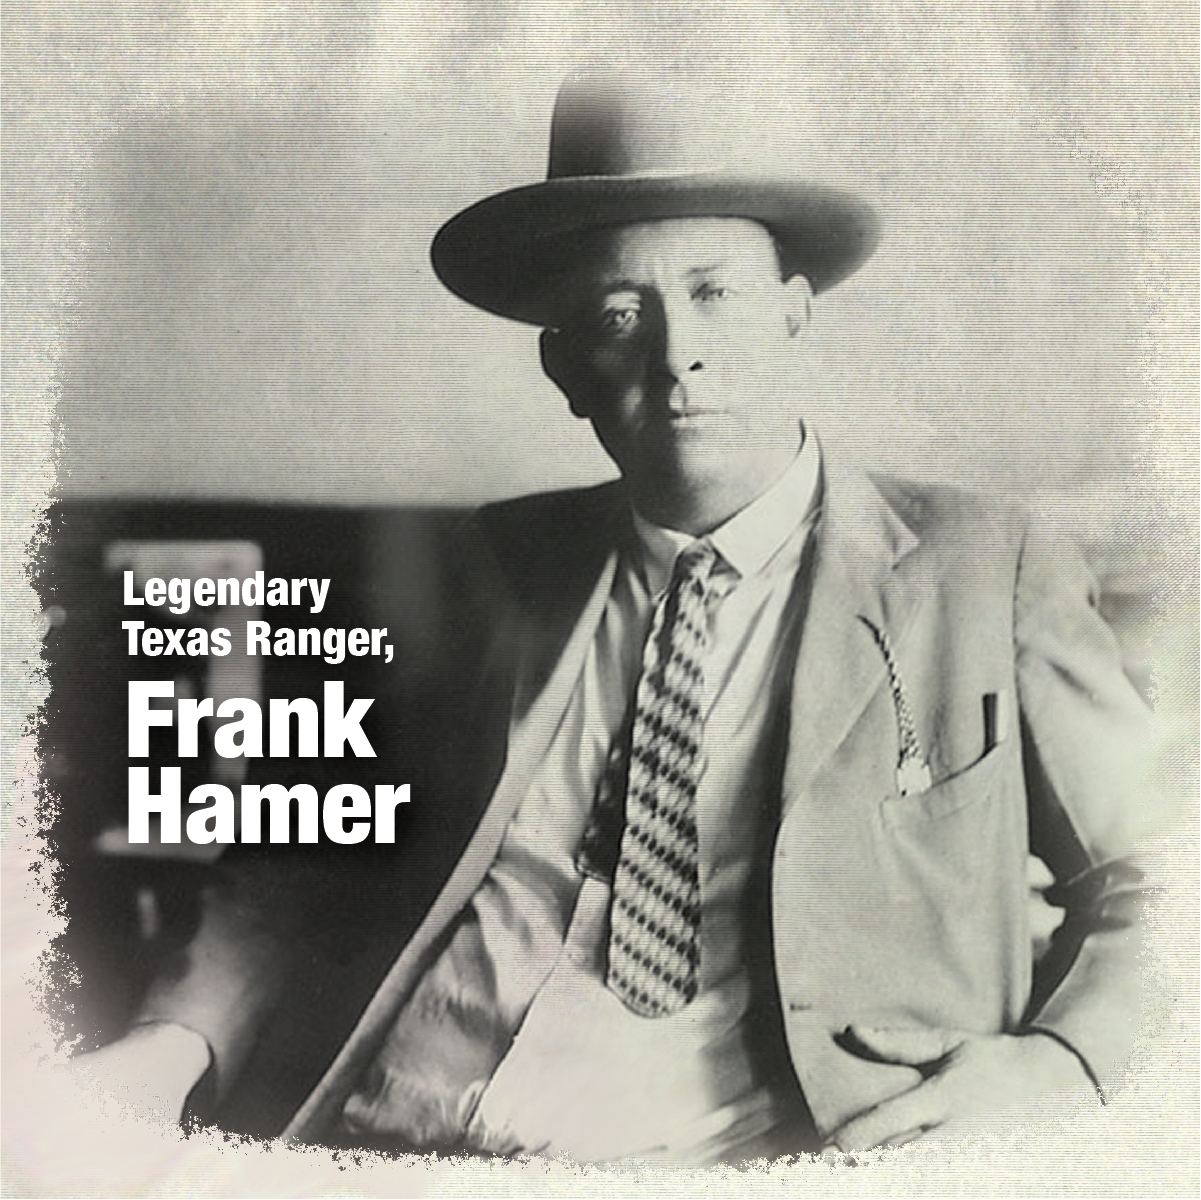 Frank Hamer, legendary Texas Ranger and Lawman.